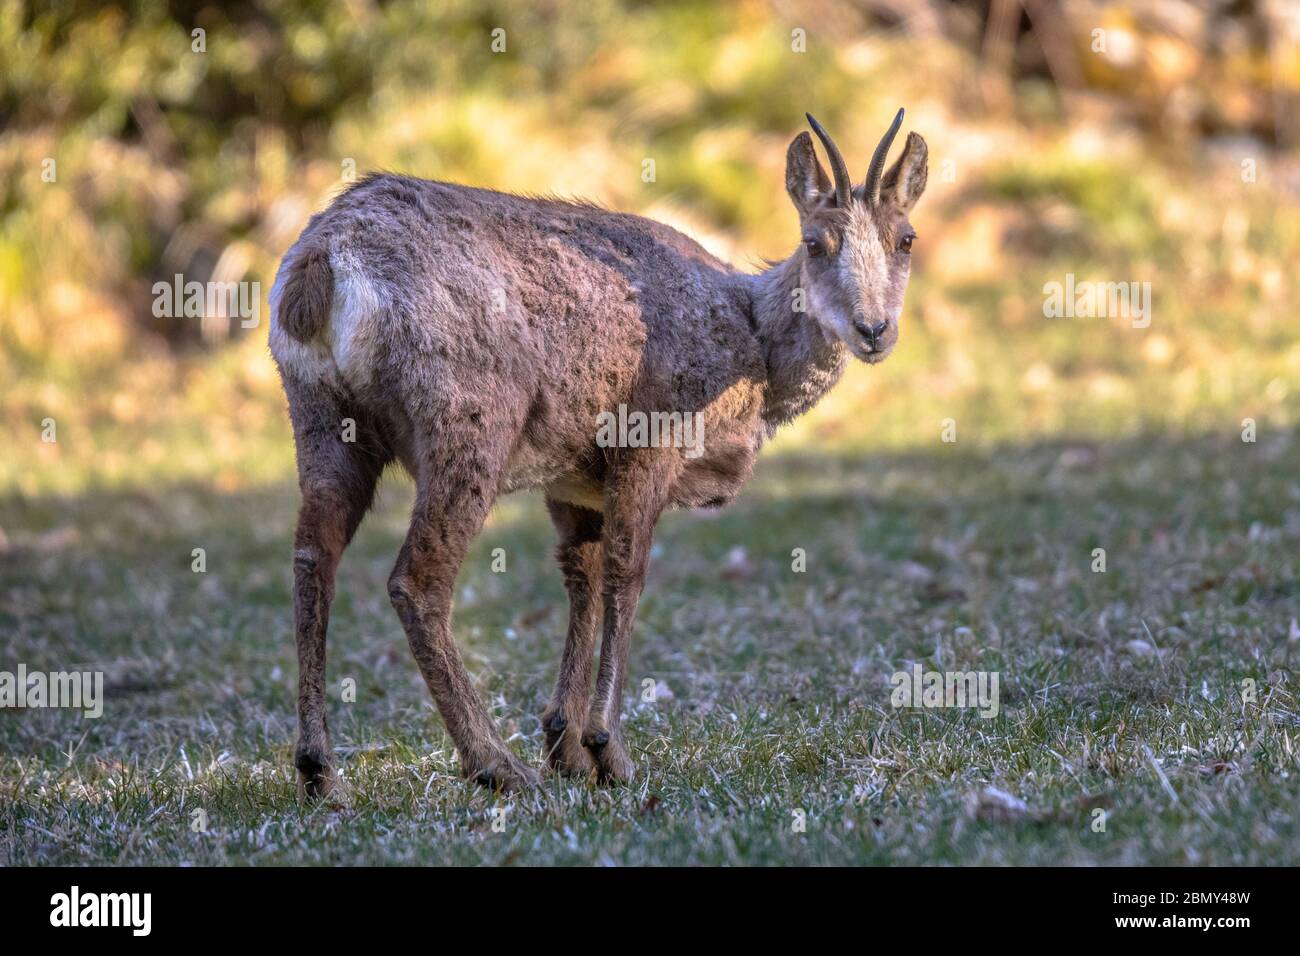 Pyrenäen-Chamois (Rupicapra rupicapra) ist eine in den Bergen Europas heimische Ziegenantilope, zu der auch die europäischen Alpen, die Pyrenäen, das Auto gehören Stockfoto